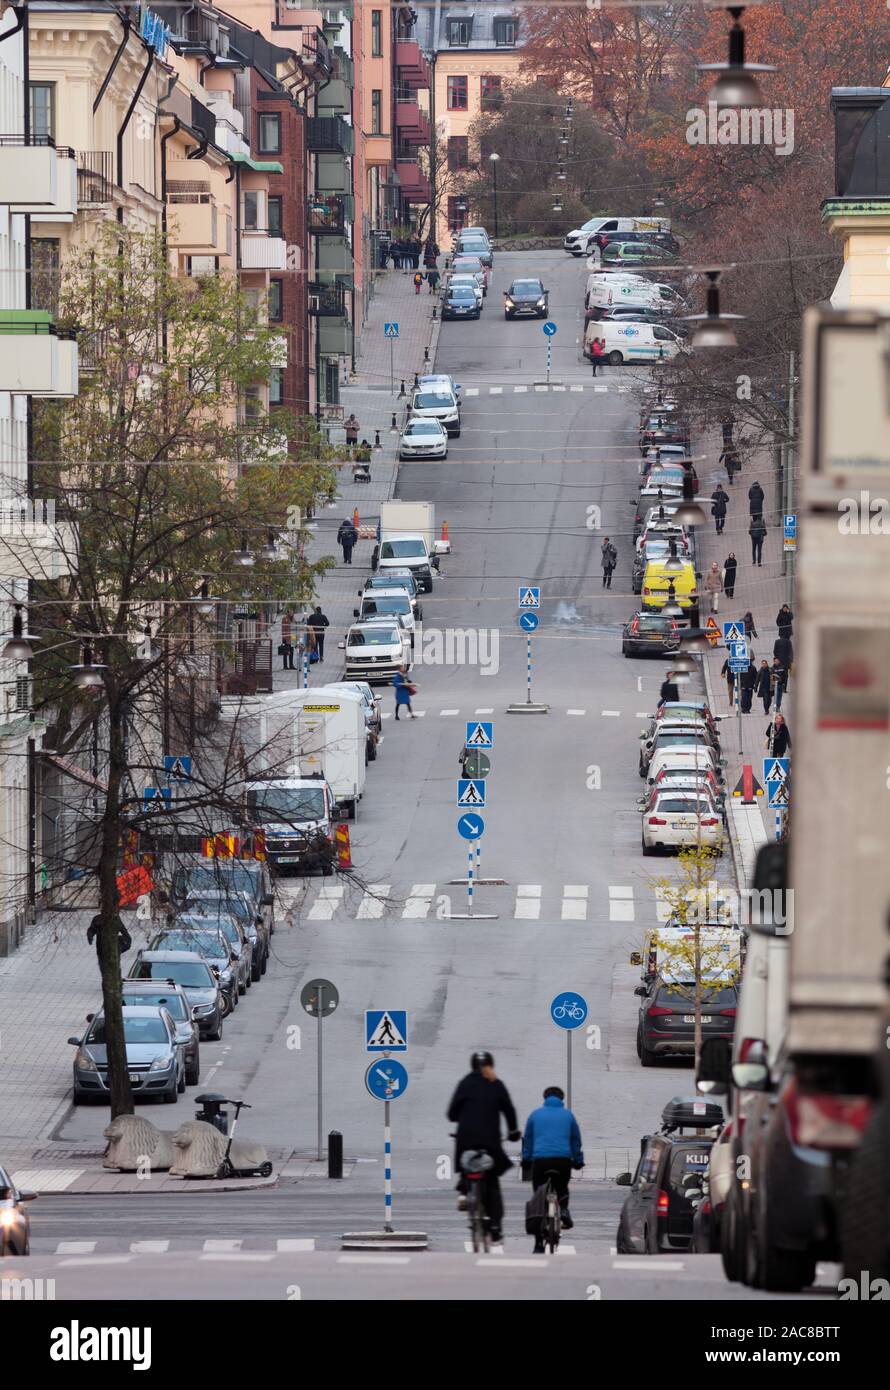 Berggatan en Kungsholmen durante la mañana el tráfico en Estocolmo, Suecia Foto de stock